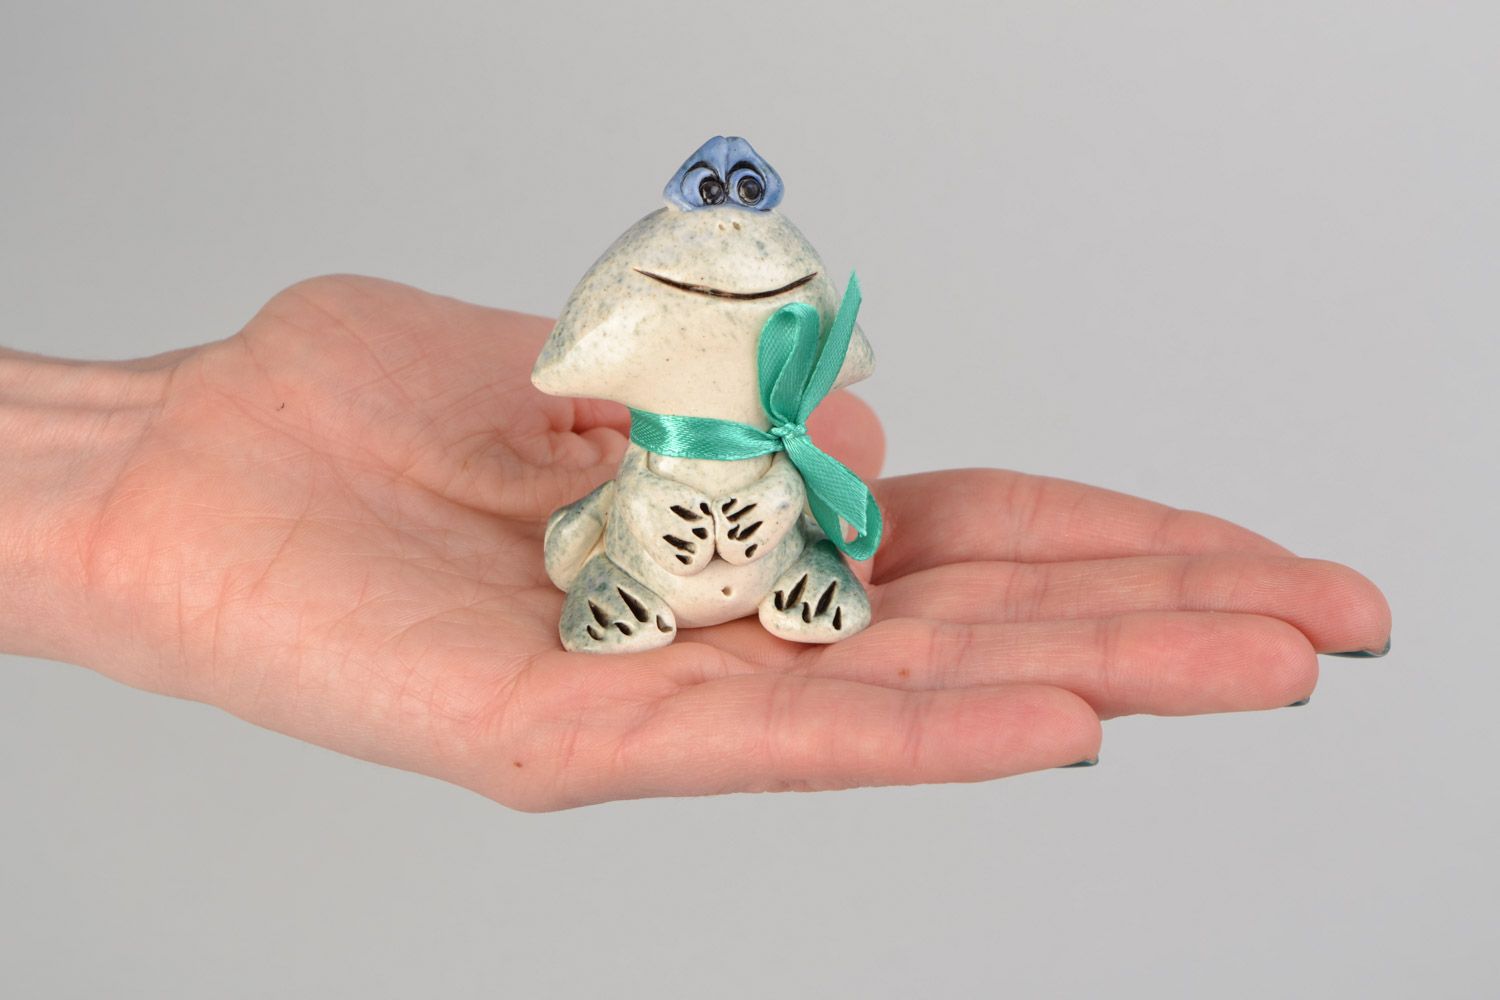 Авторская расписанная глазурью глиняная фигурка лягушки-мальчика ручной работы фото 2